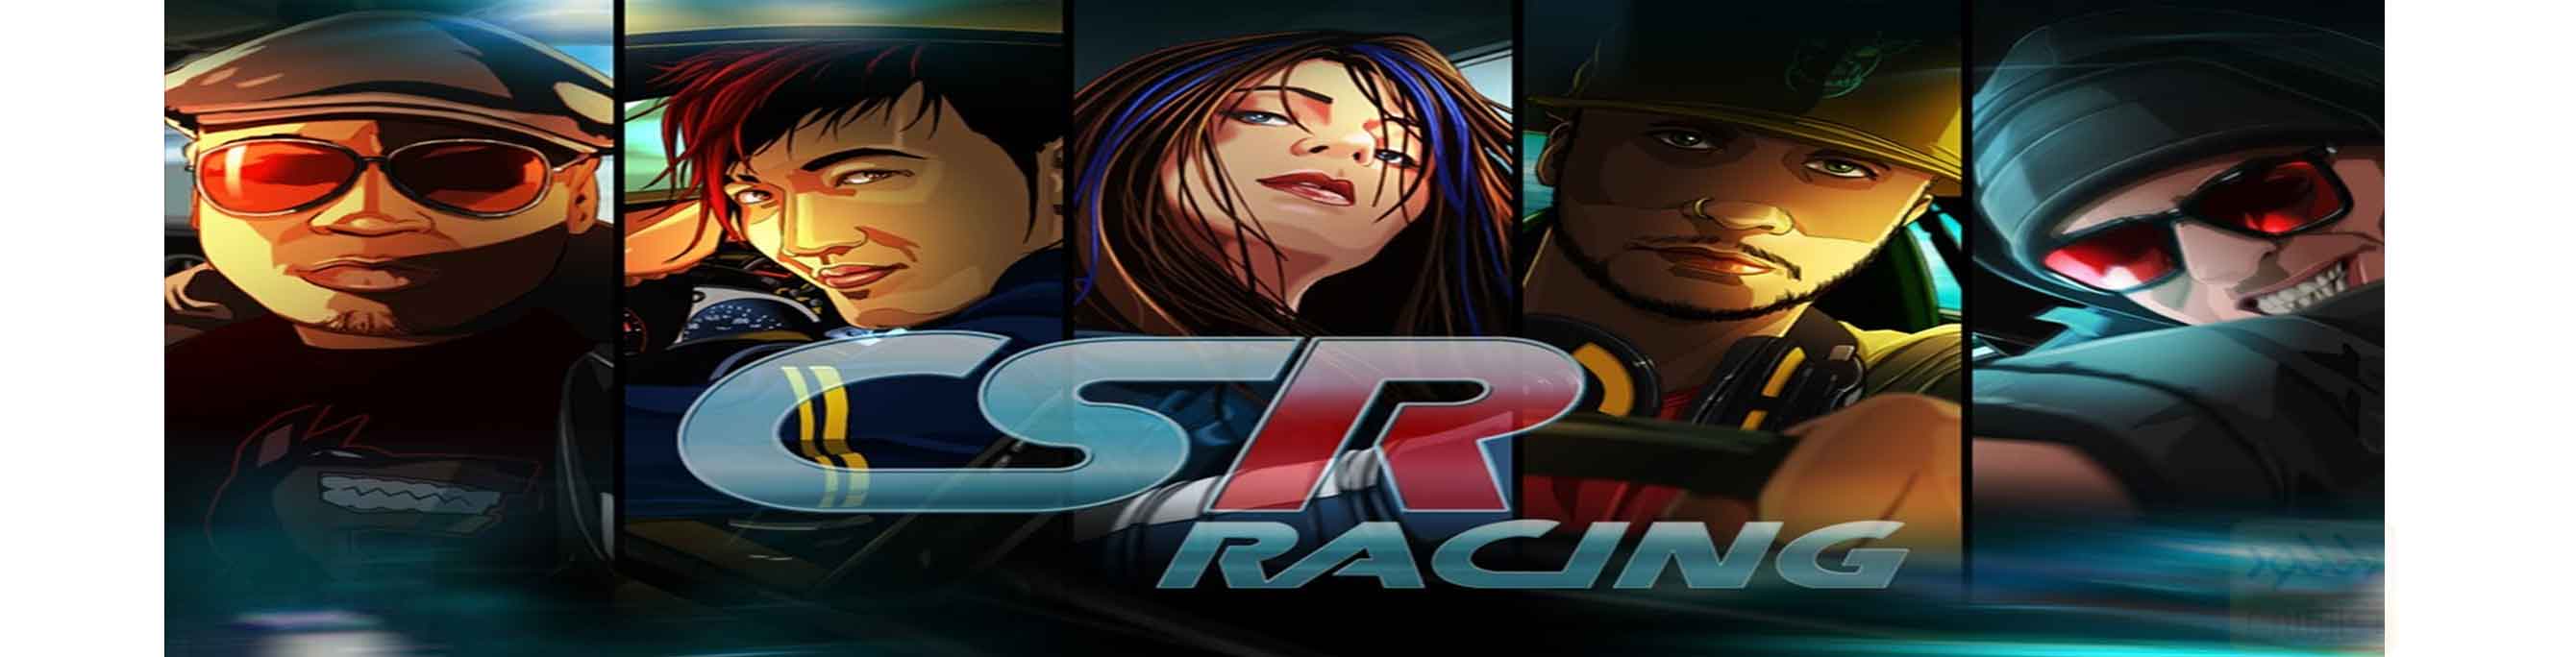 دانلود بازی CSR Racing 3.7.0 برای اندروید